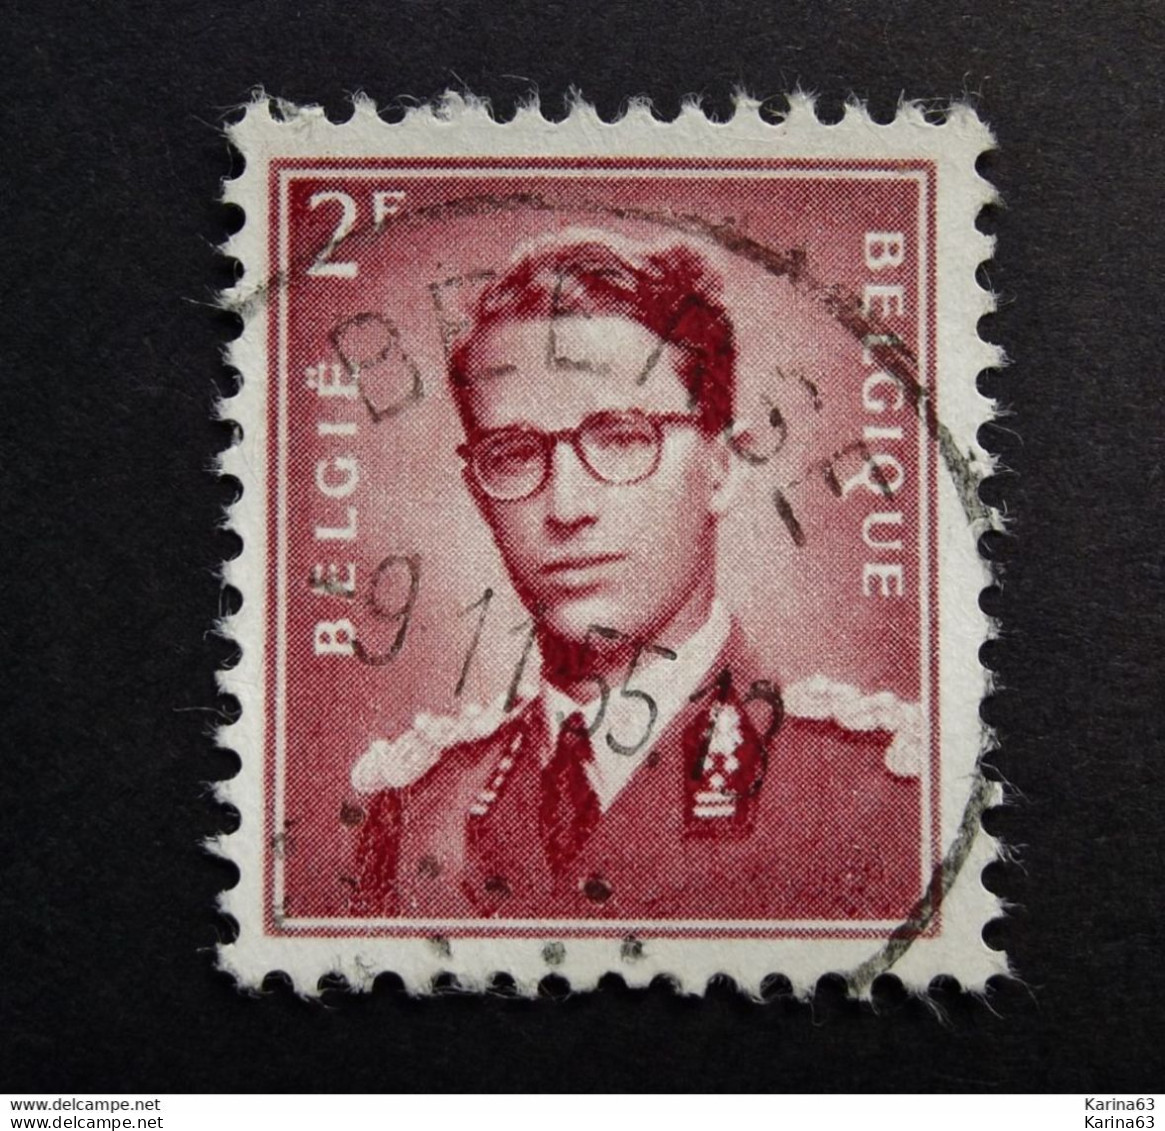 Belgie Belgique - 1953 -  OPB/COB  N° 925 - 2 F  - Obl. Central - BEERSE - 1955 - Used Stamps